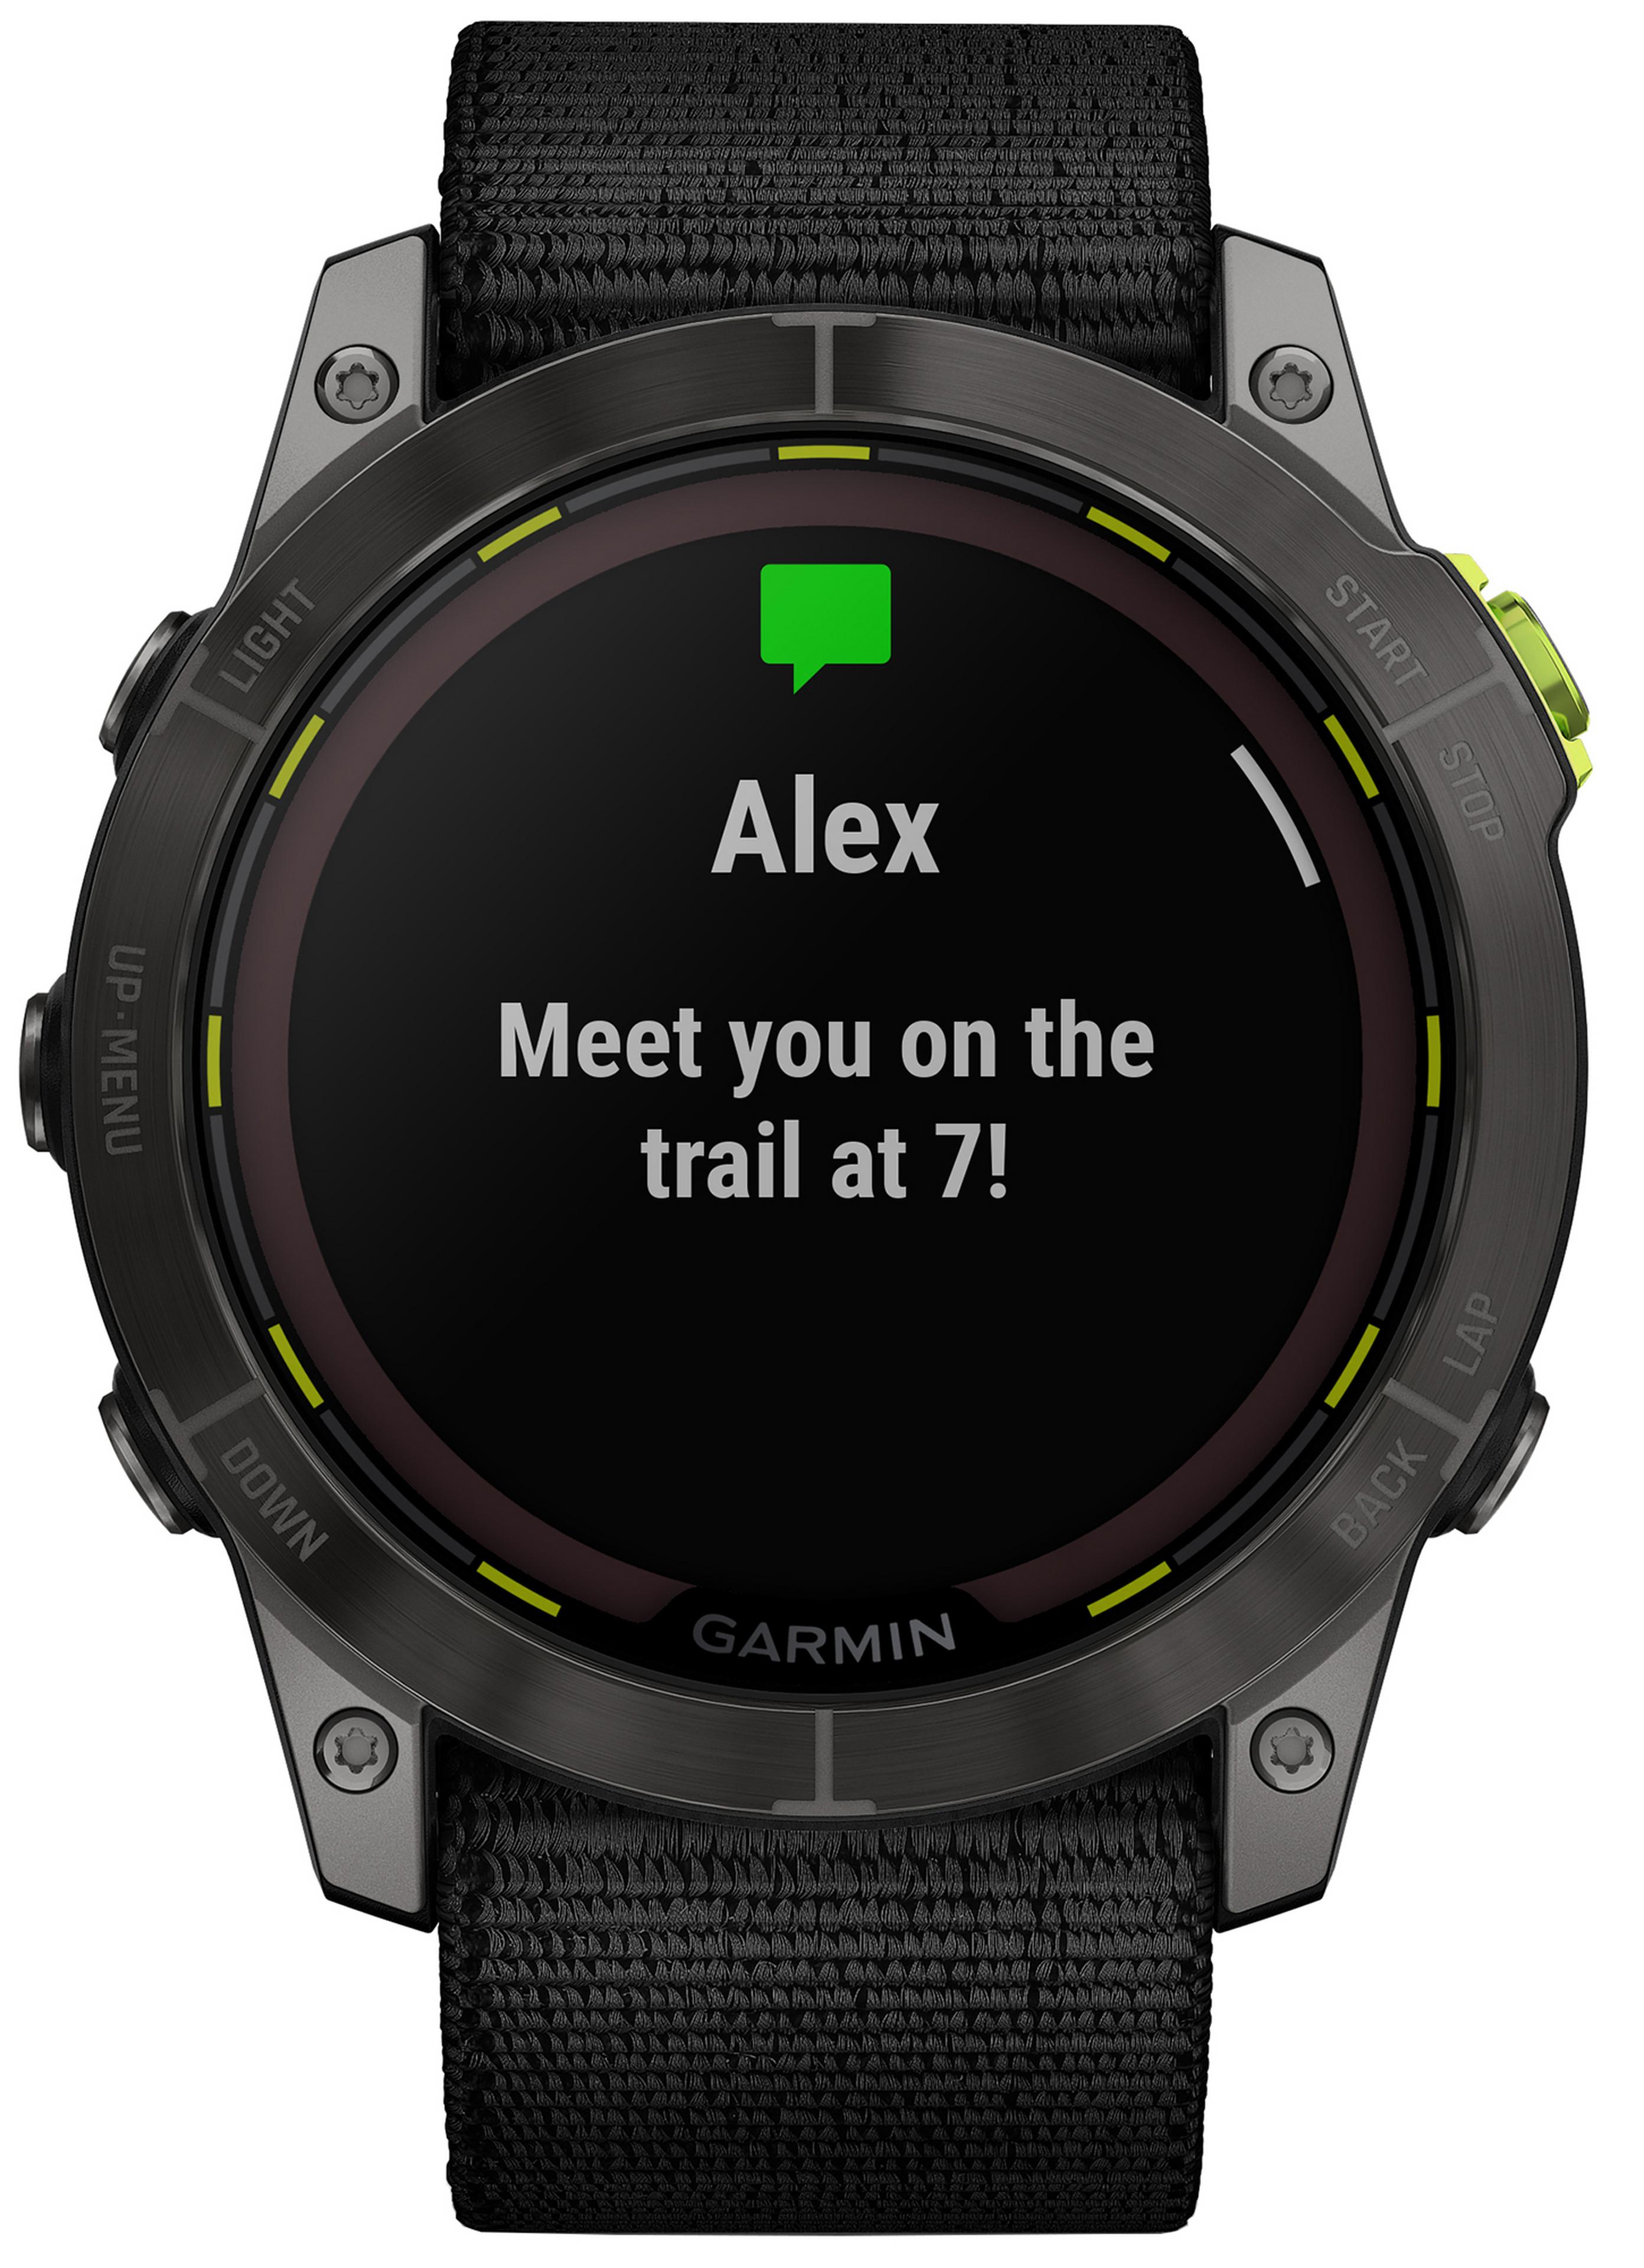 Garmin Enduro 2 ultraperformance smartwatch has a touchscreen & battery  life of 46 days » Gadget Flow